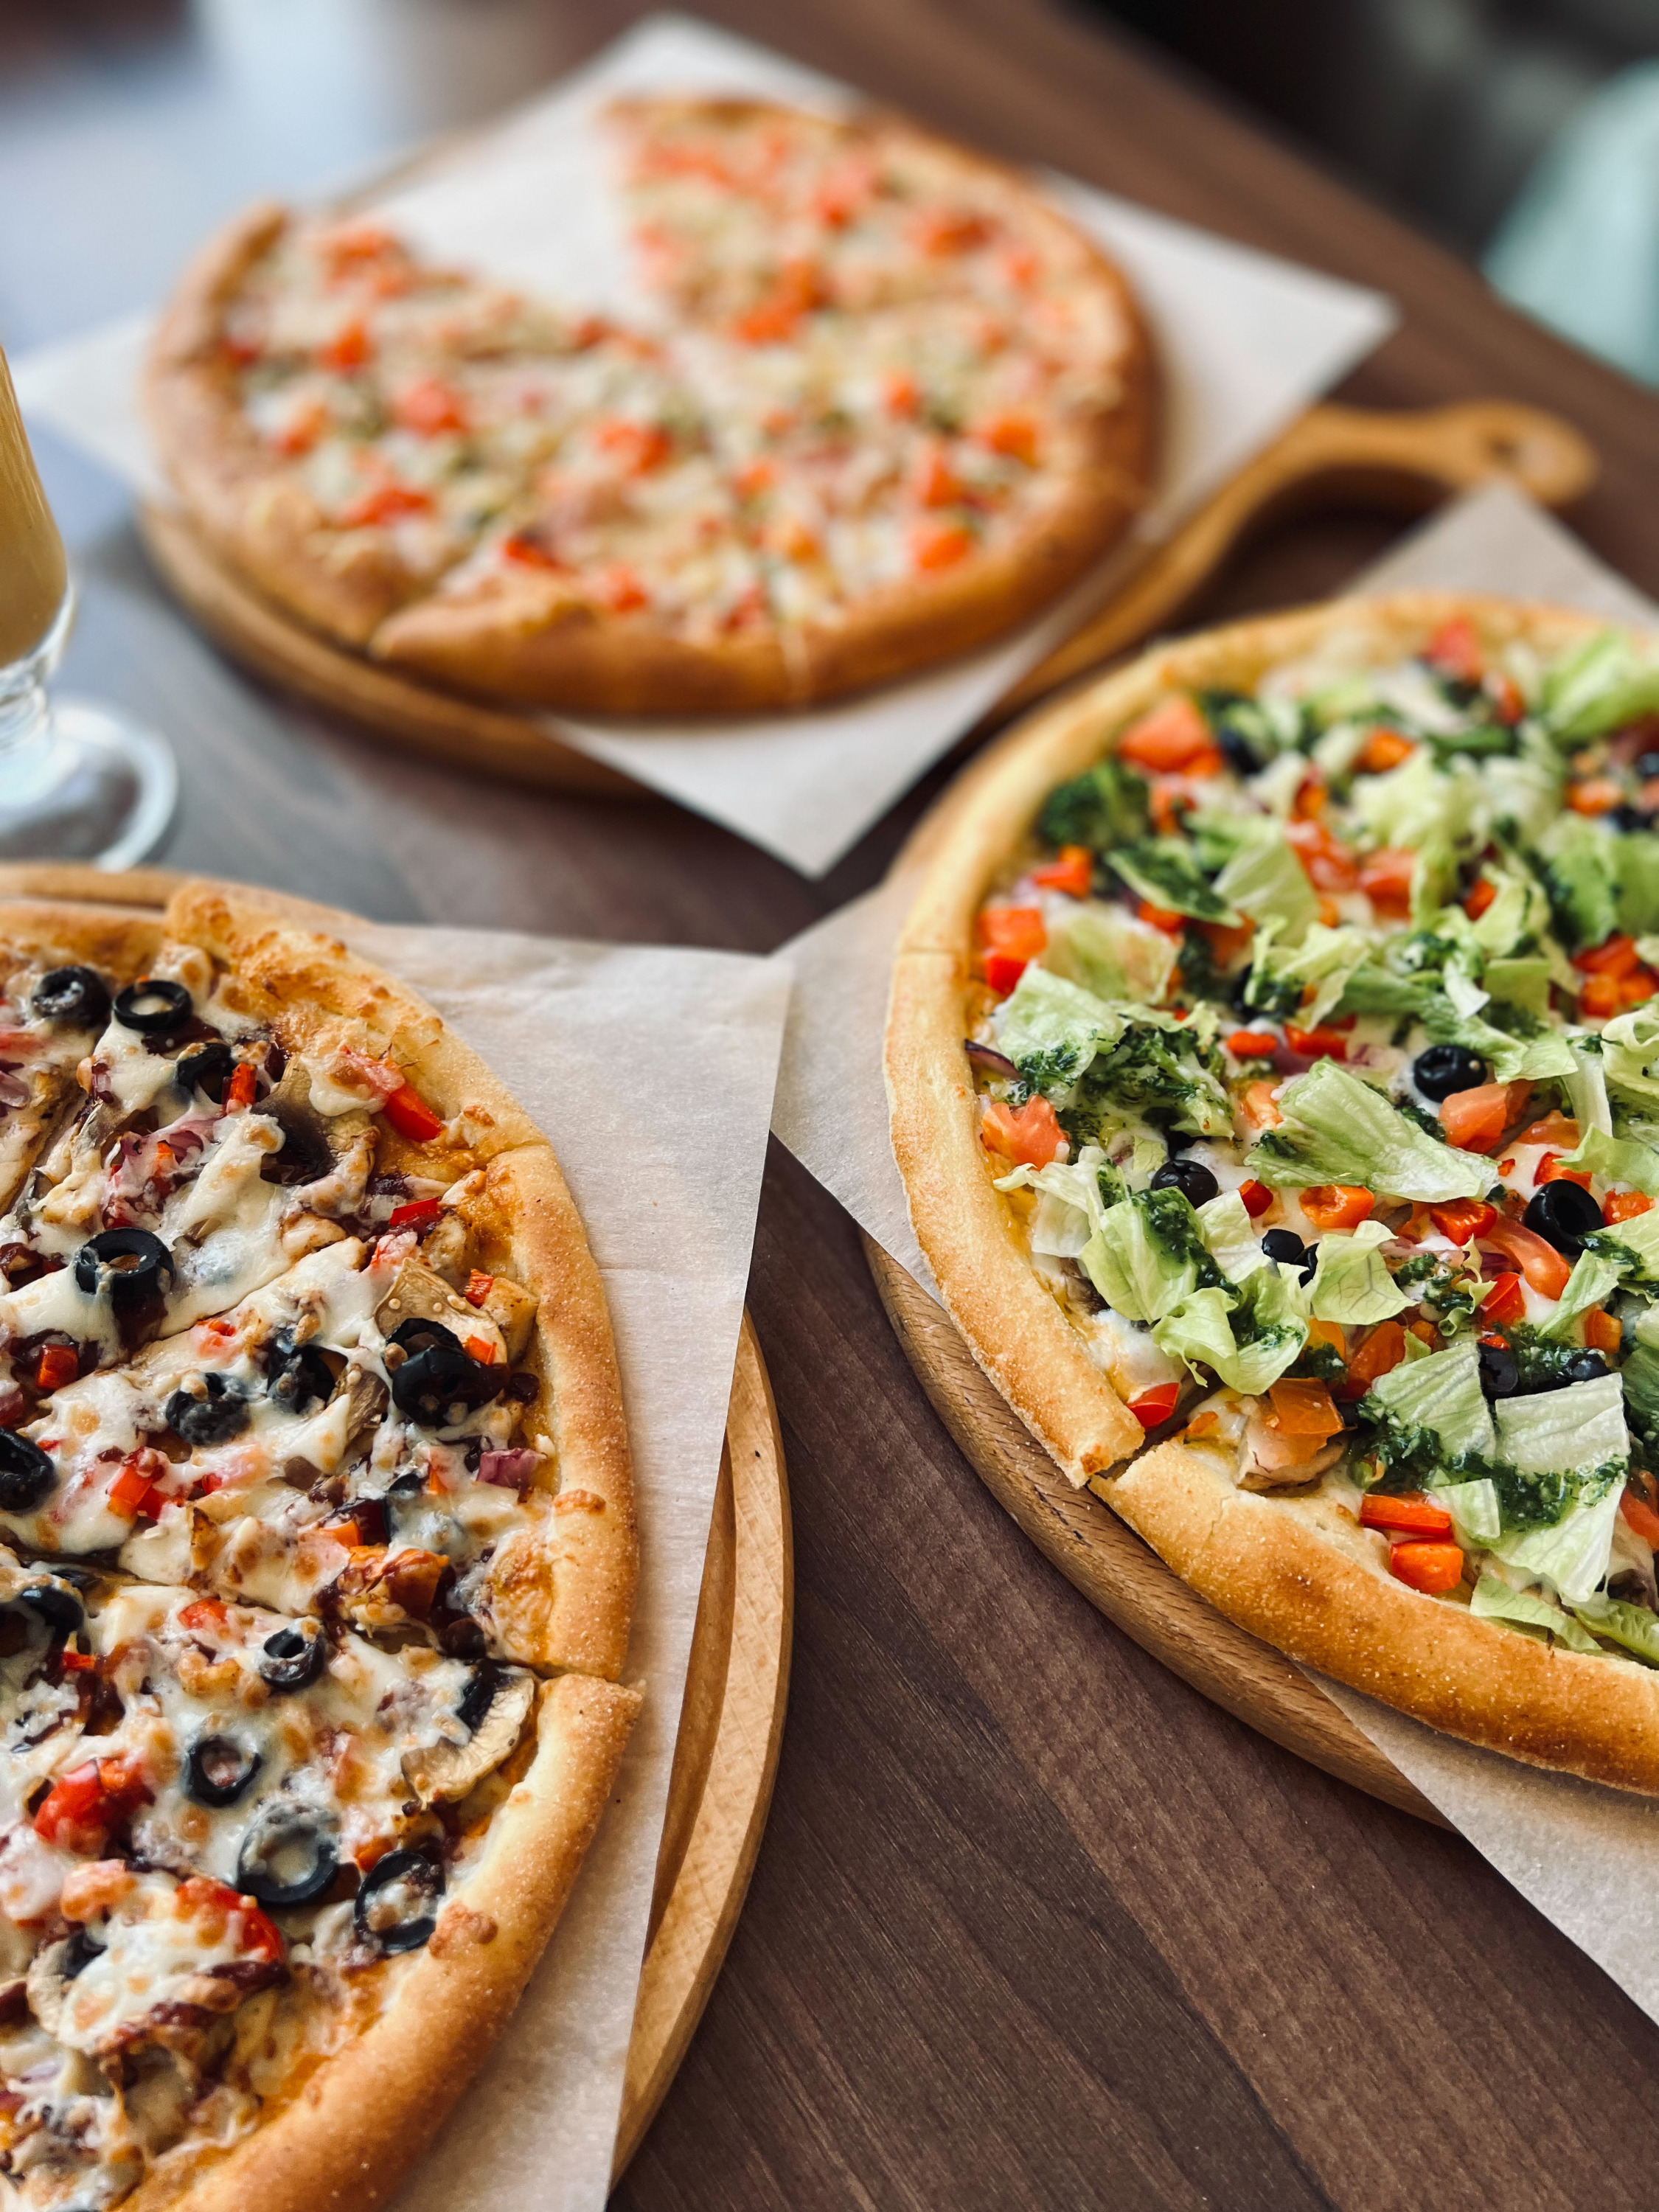 В ресторанах действуют выгодные предложения на наборы пицц